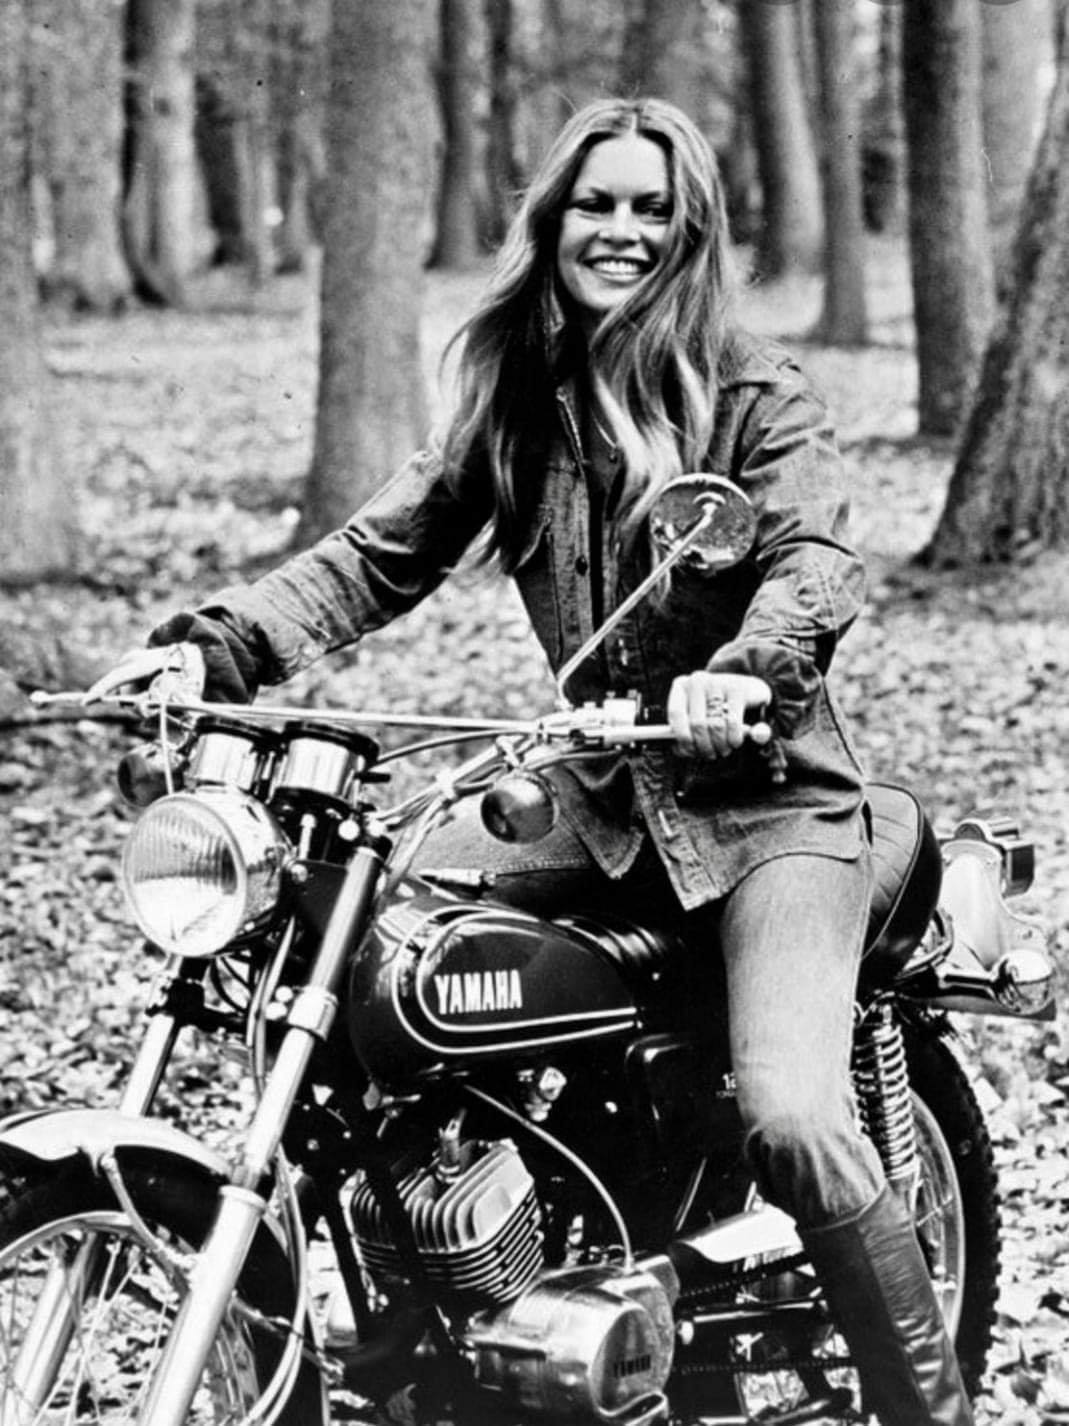 Brigitte Bardot.jpg